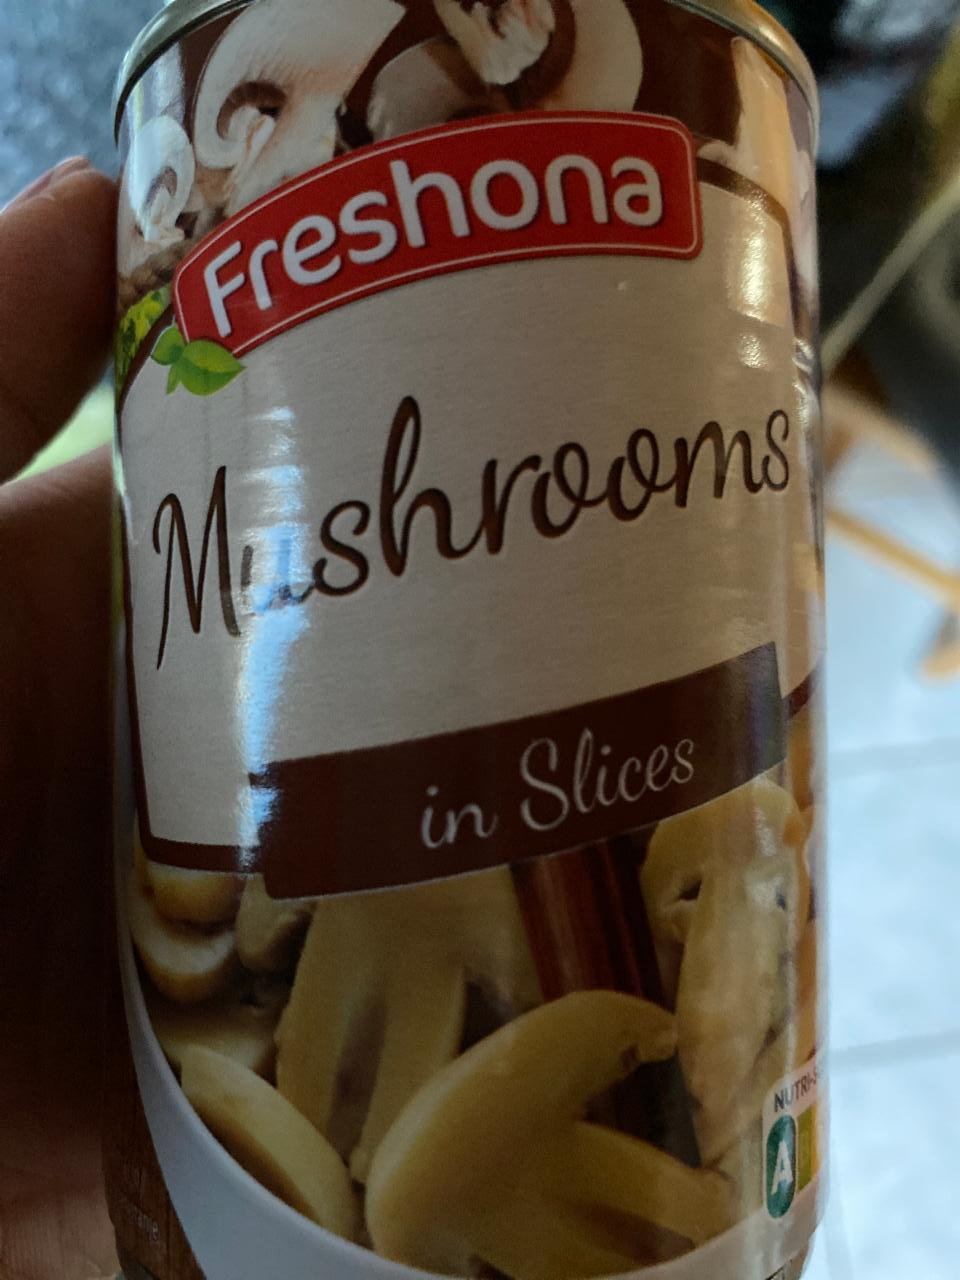 Képek - Mushrooms in slices Freshona